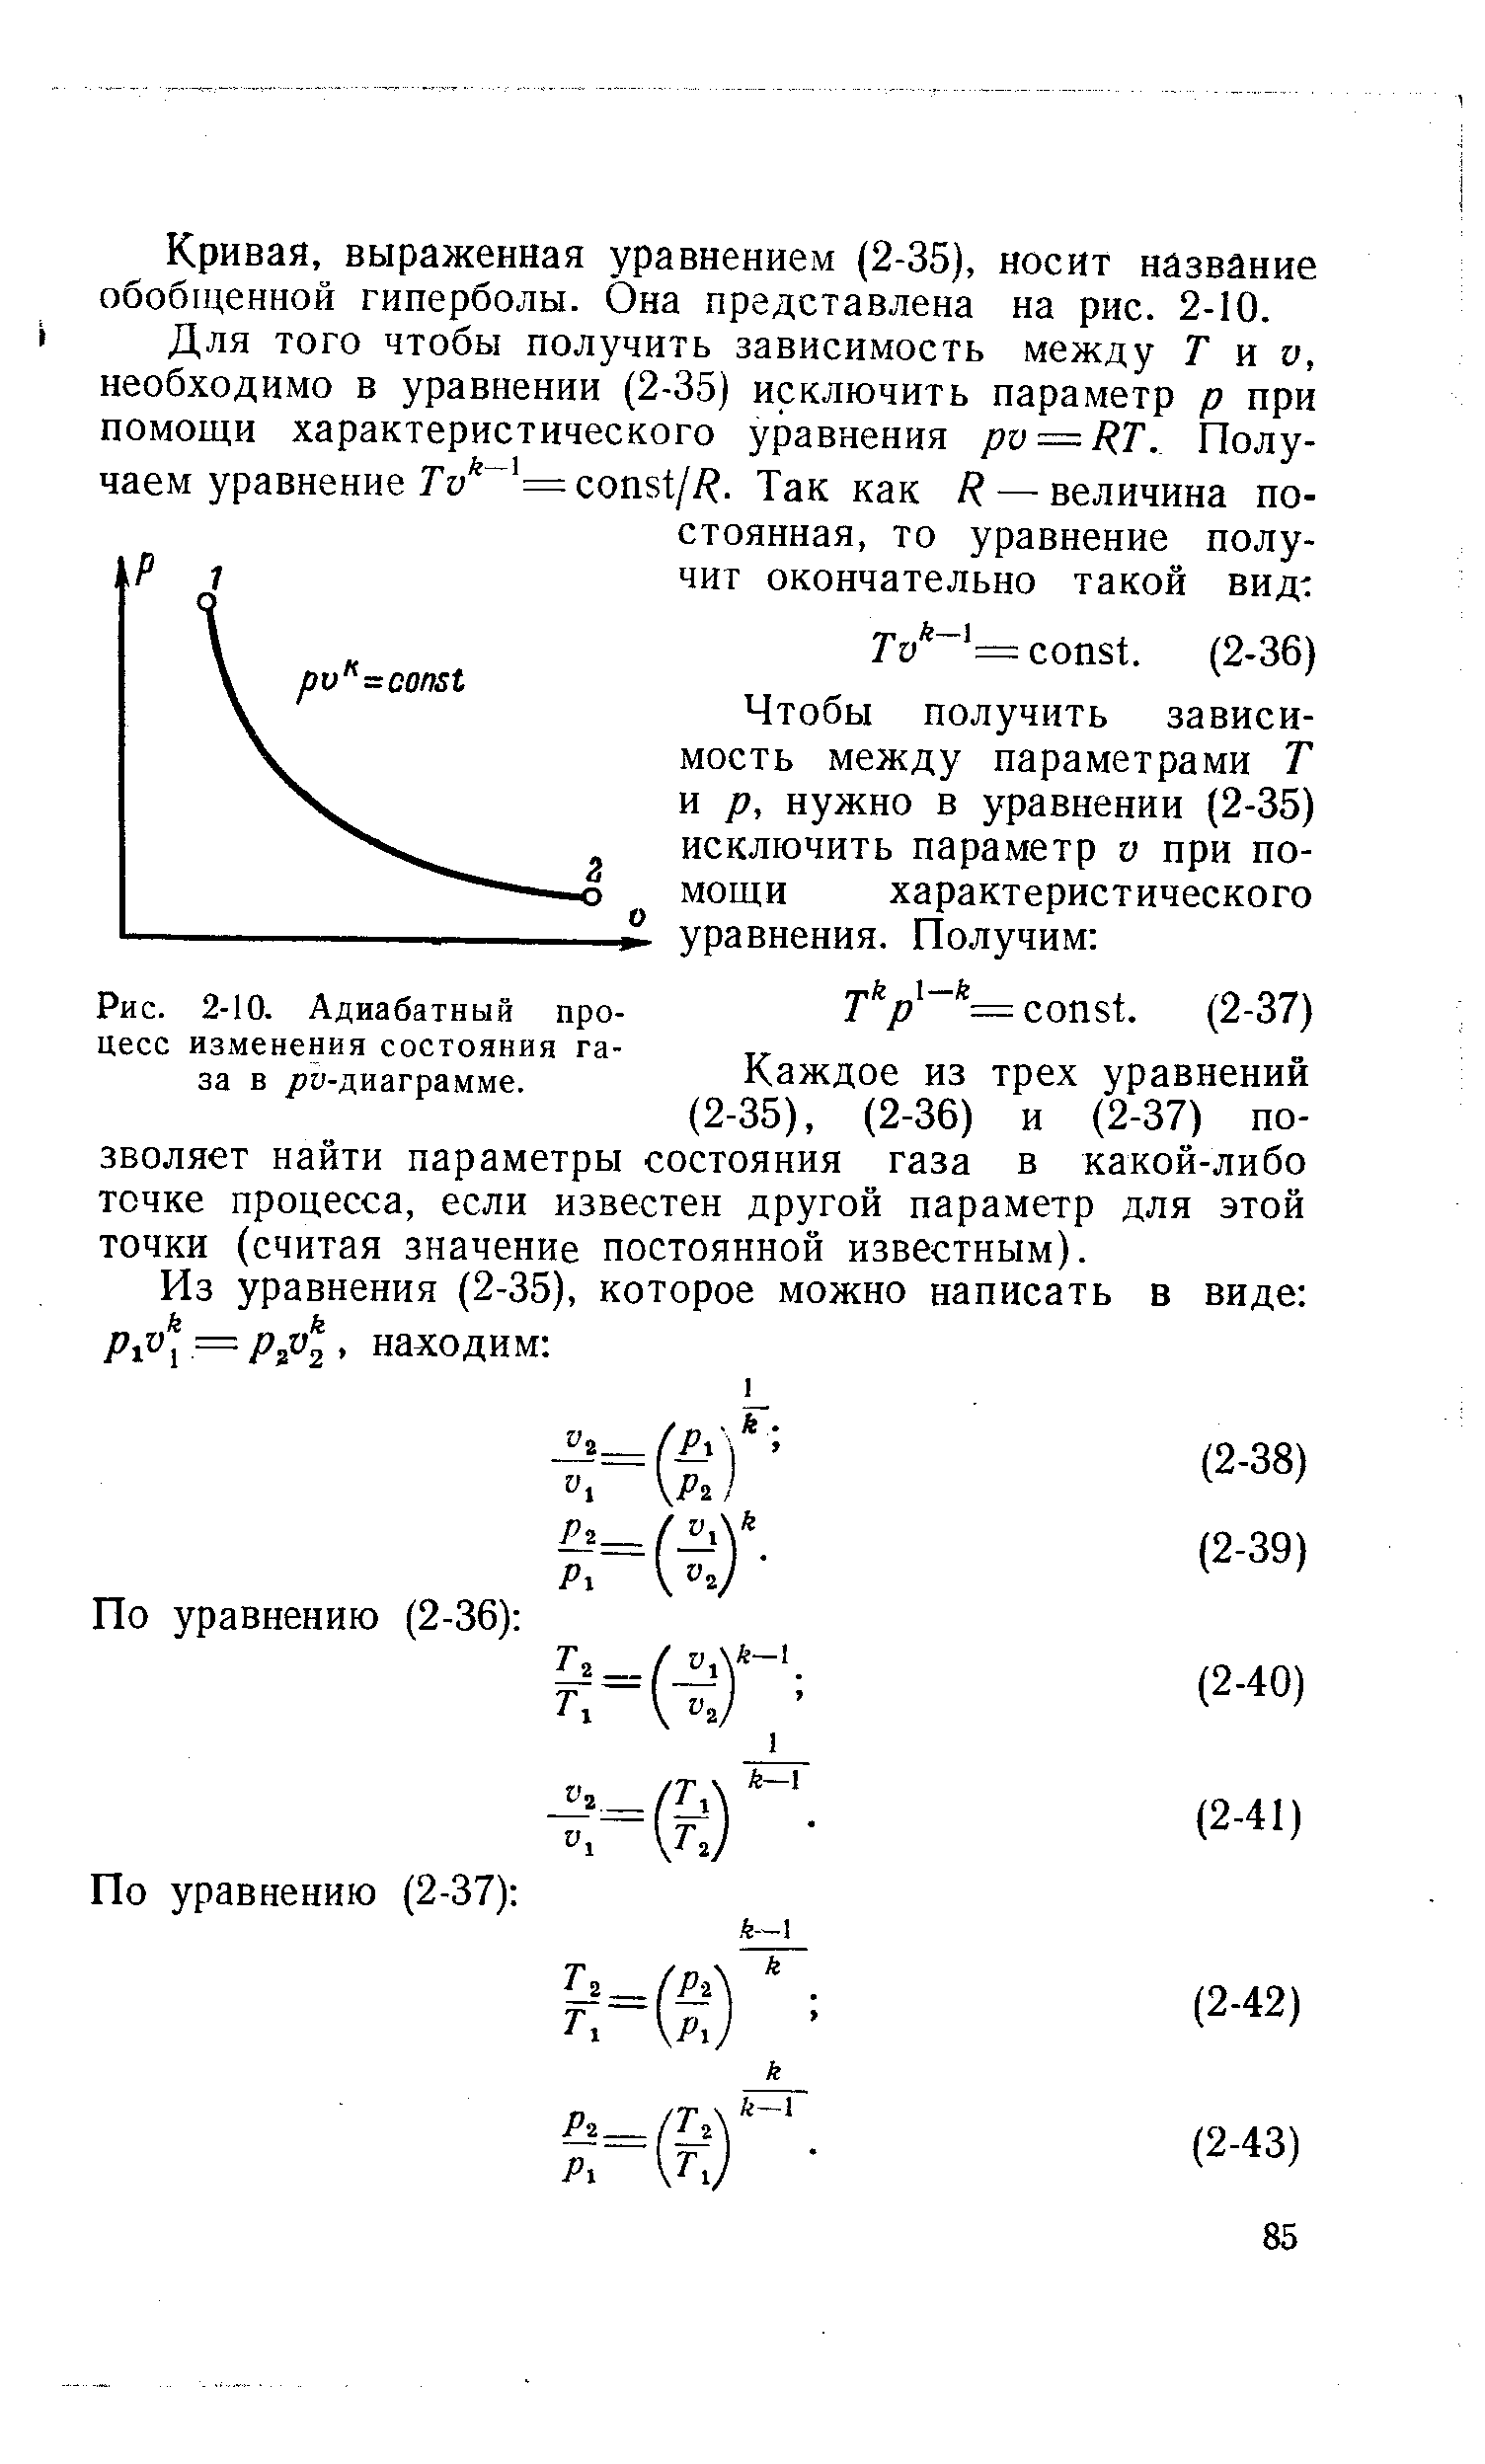 Рис. 2-10. Адиабатный процесс изменения состояния газа в /)и-диаграмме.
